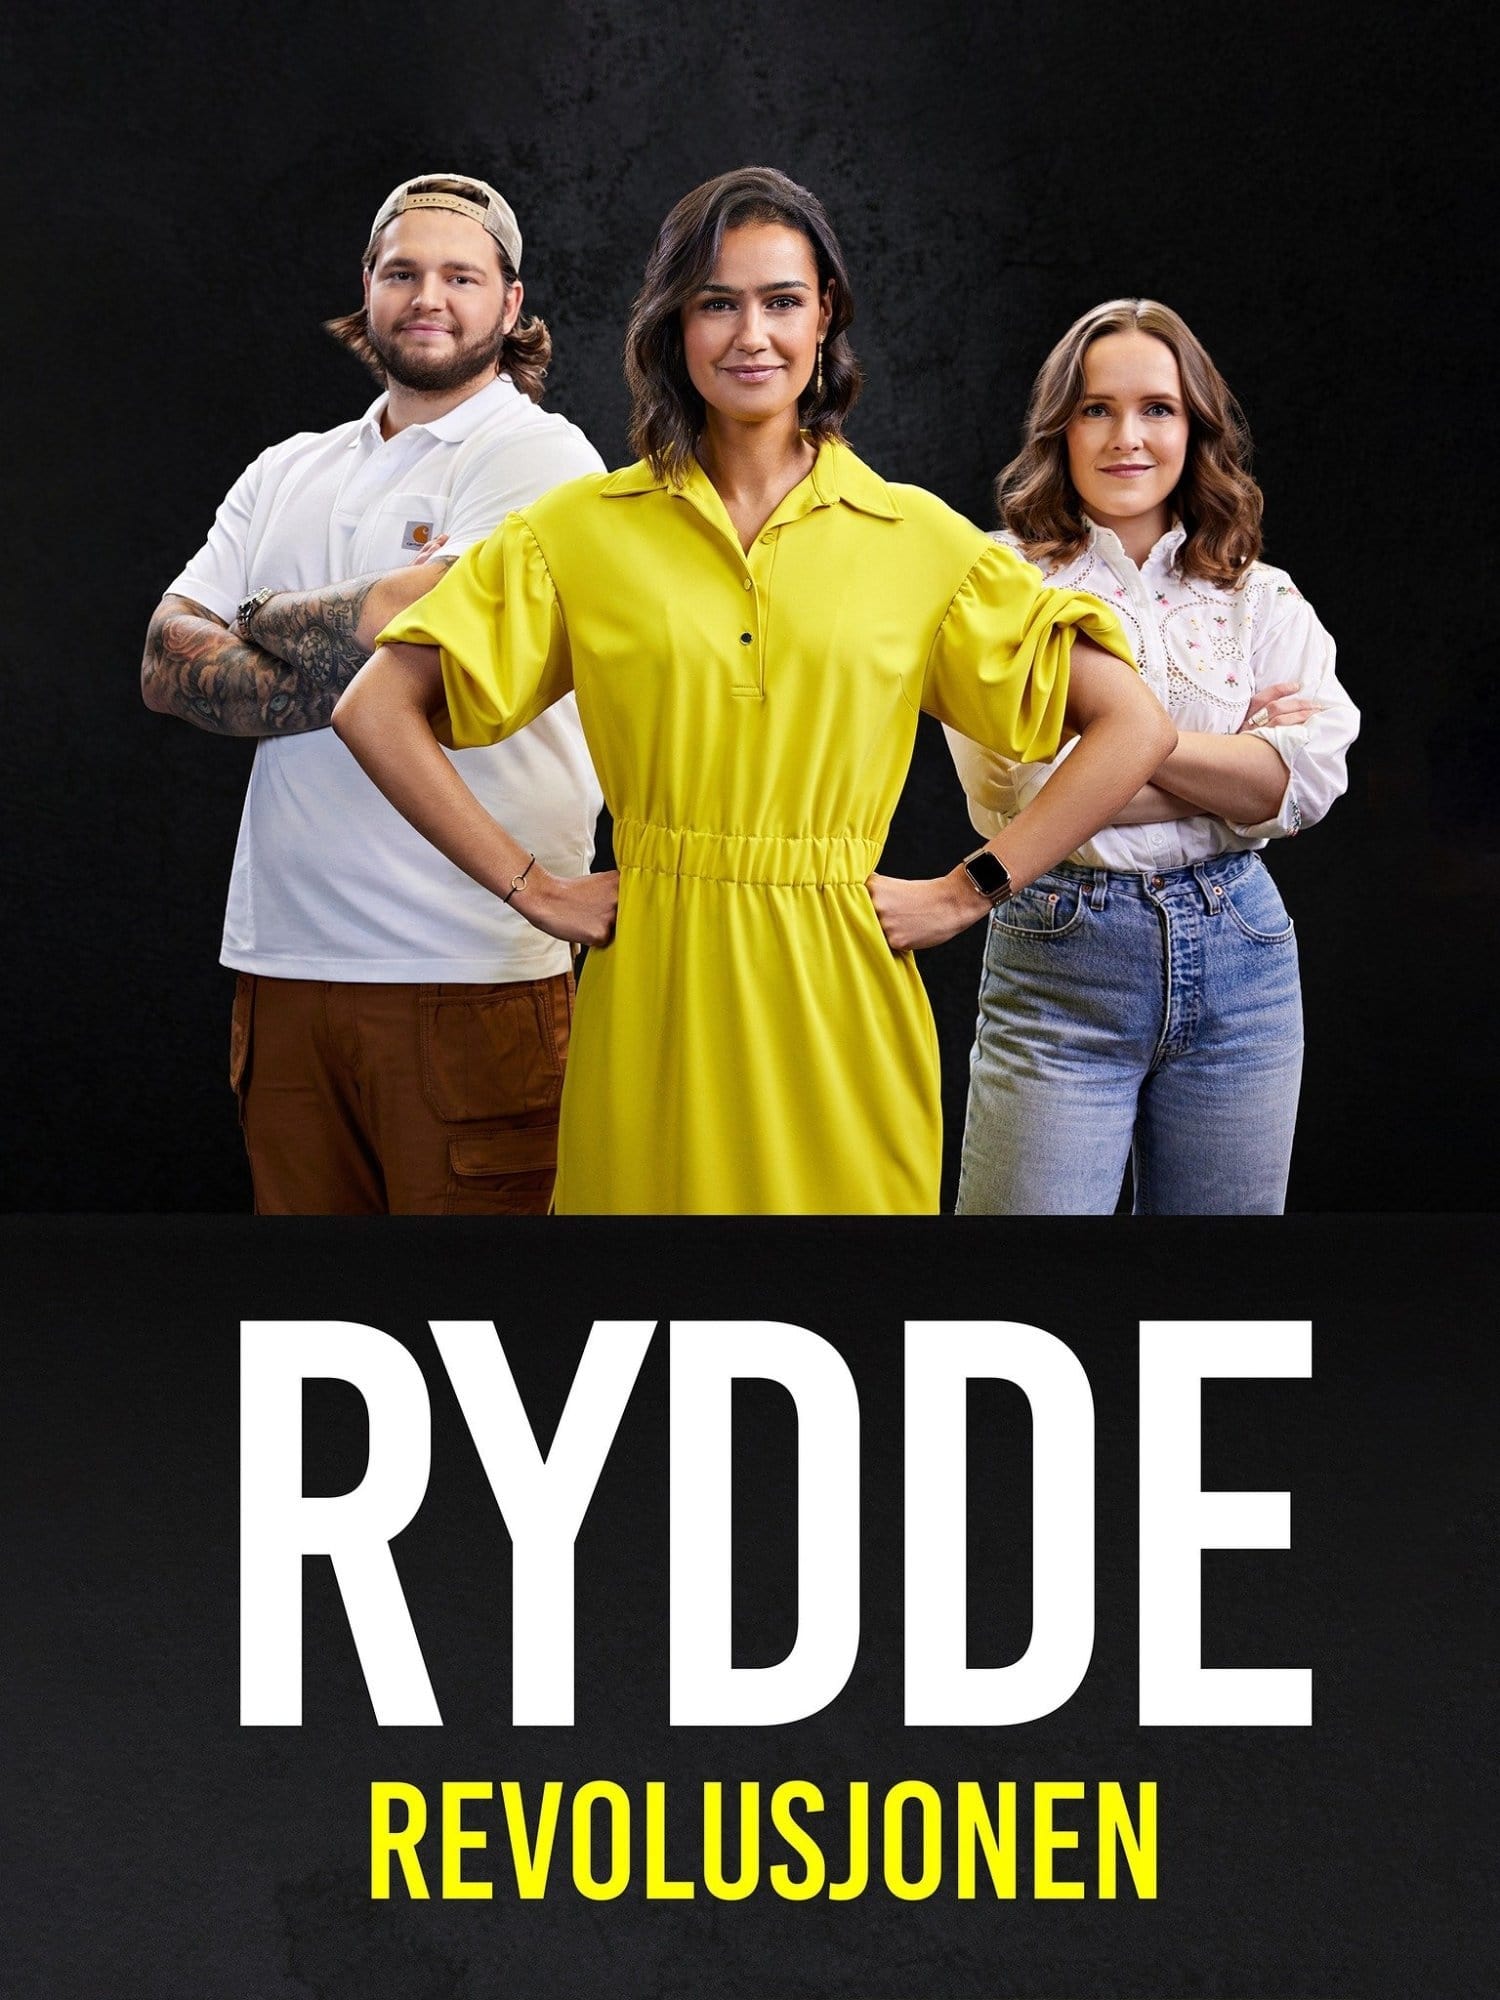 TV ratings for Rydderevolusjonen in France. TV 2 Play TV series